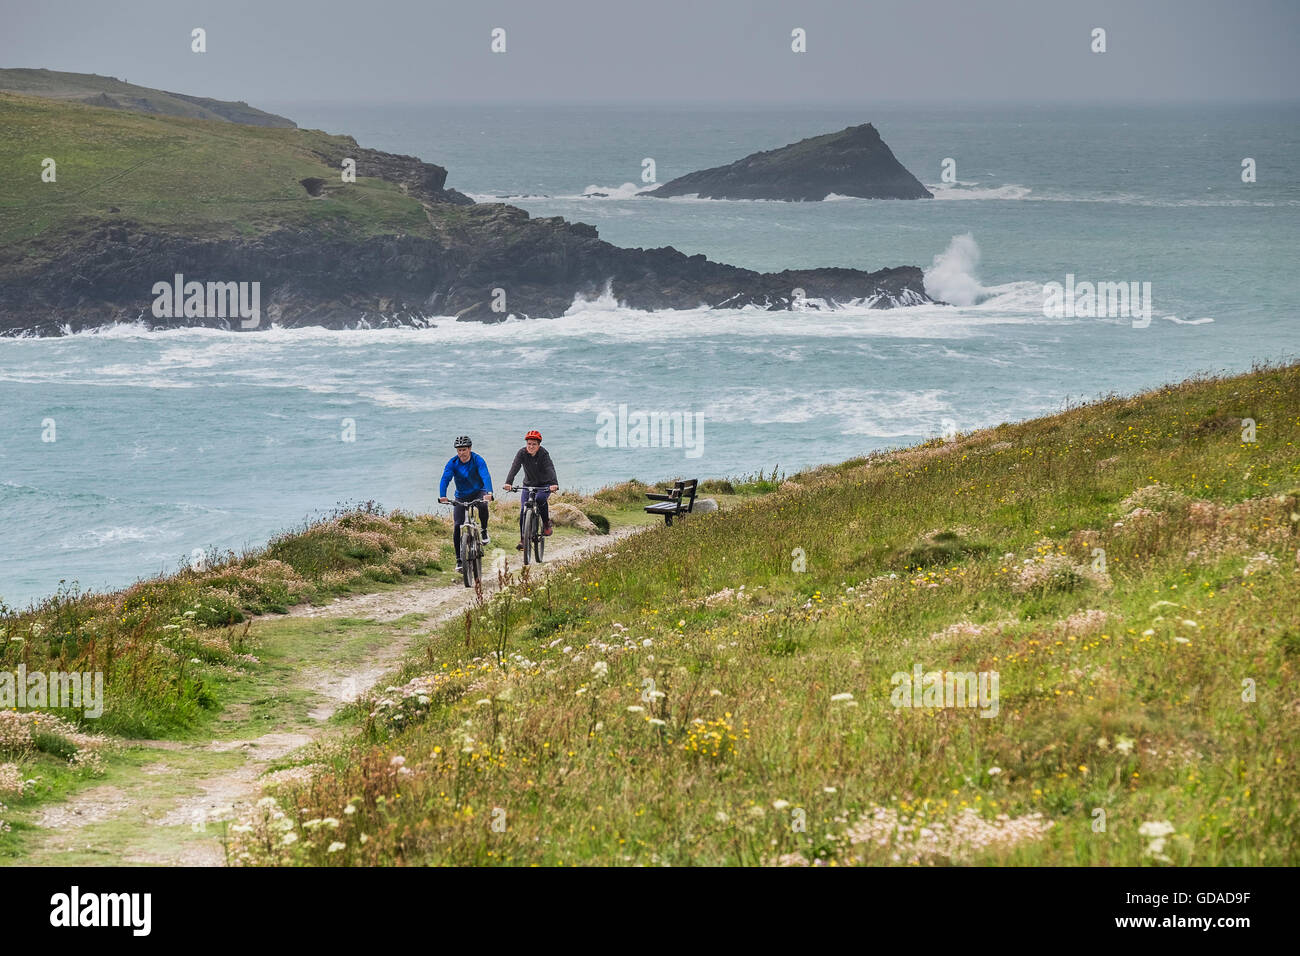 Zwei Mountainbiker Radfahren auf einem Wanderweg im Osten Pentire Landzunge in Newquay, Cornwall. Stockfoto